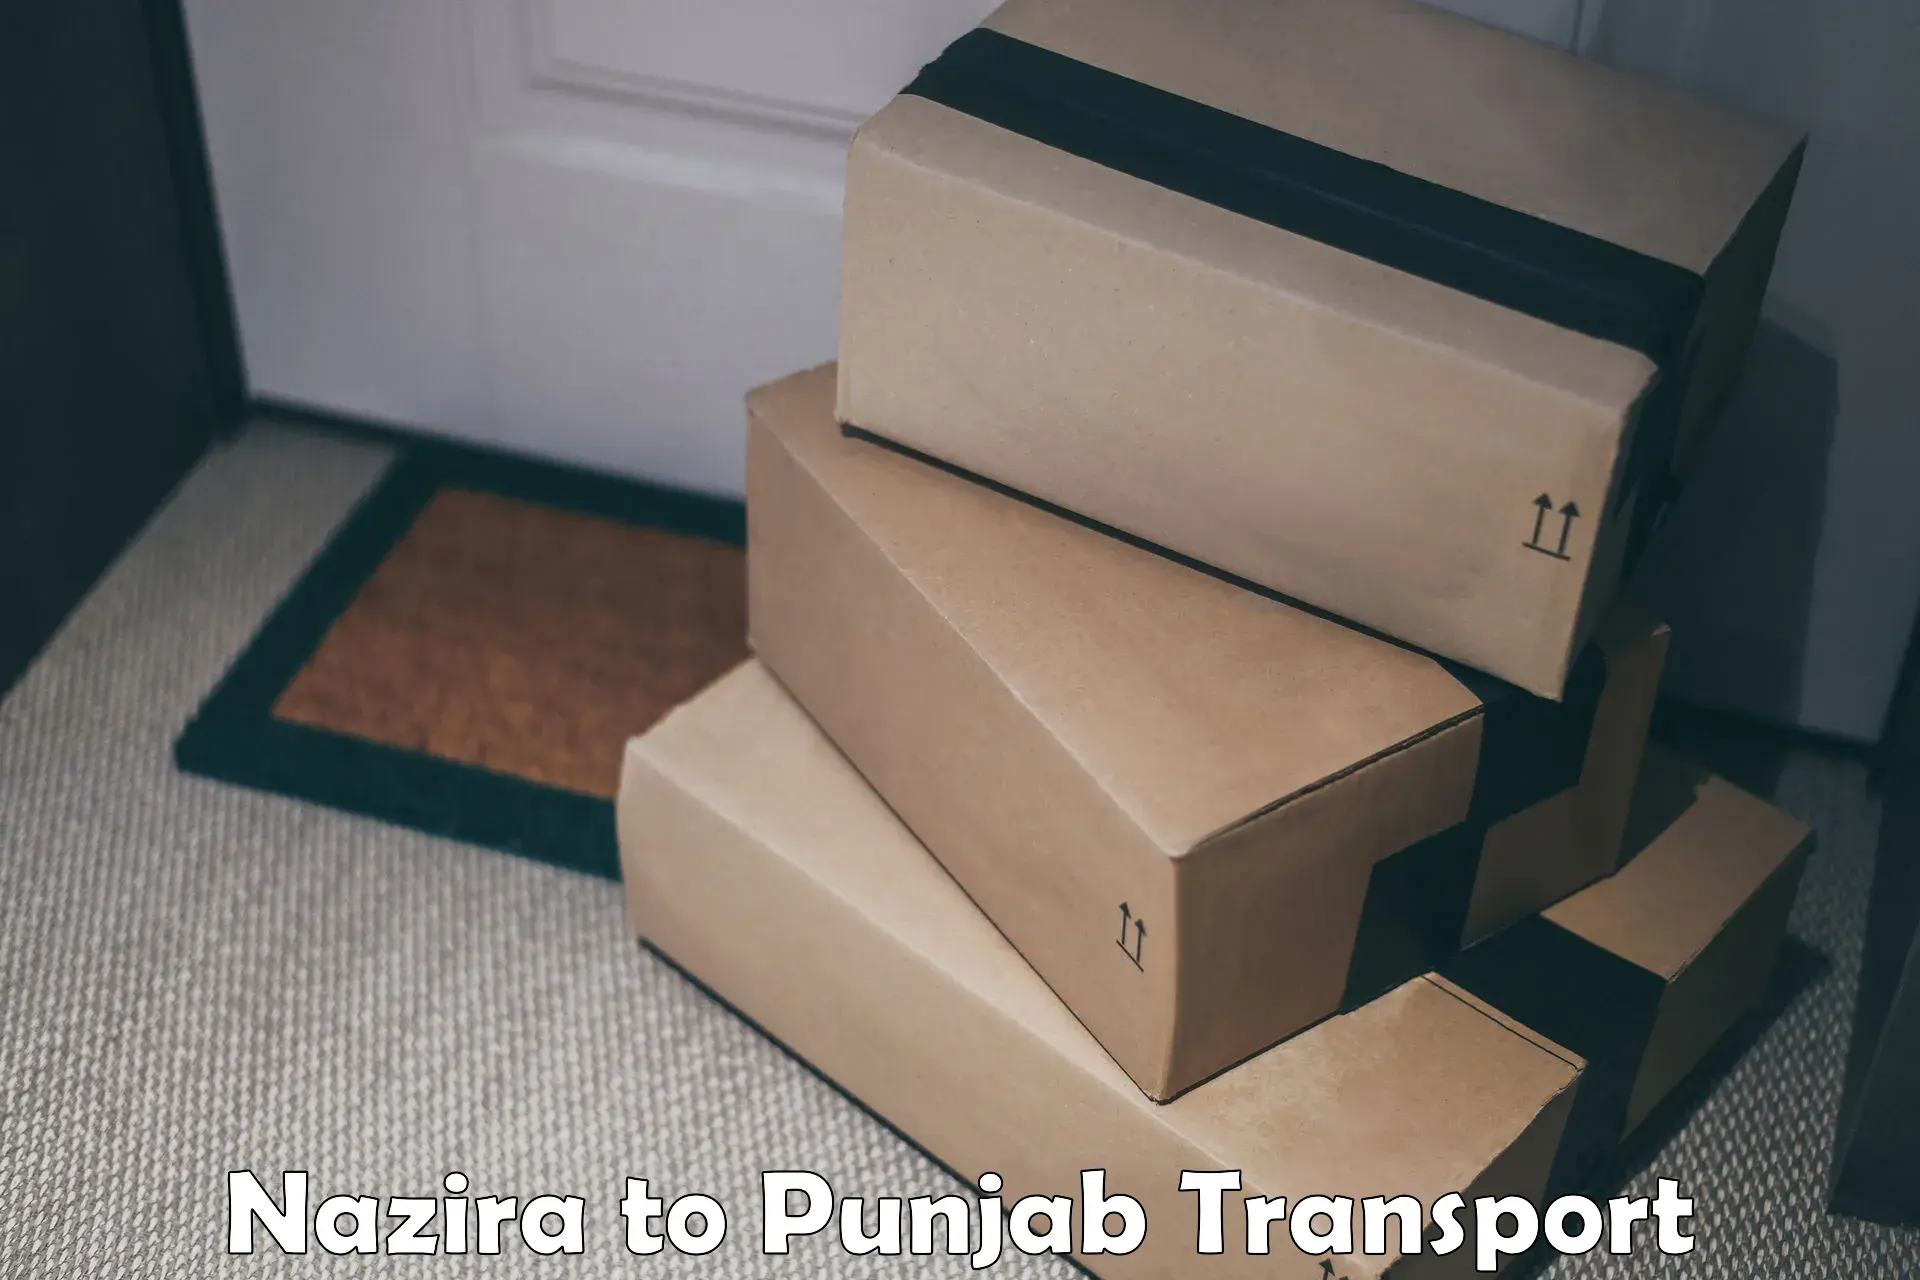 Nearest transport service Nazira to Firozpur